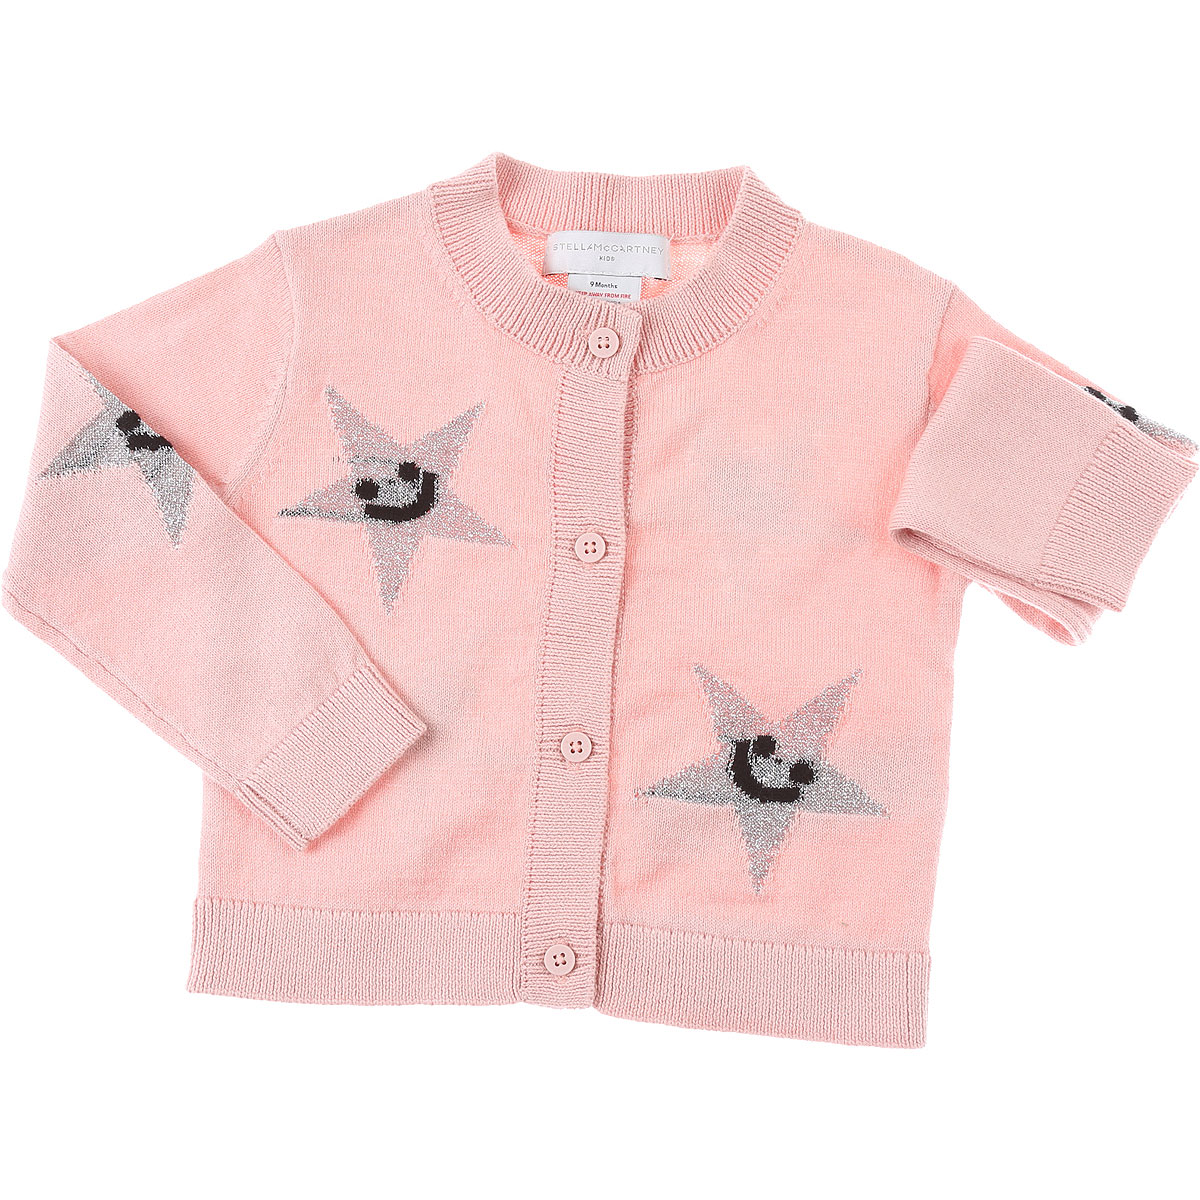 Stella McCartney Baby Pullover für Mädchen Günstig im Sale, Pink, Baumwolle, 2017, 12M 18M 2Y 3Y 6M 9M